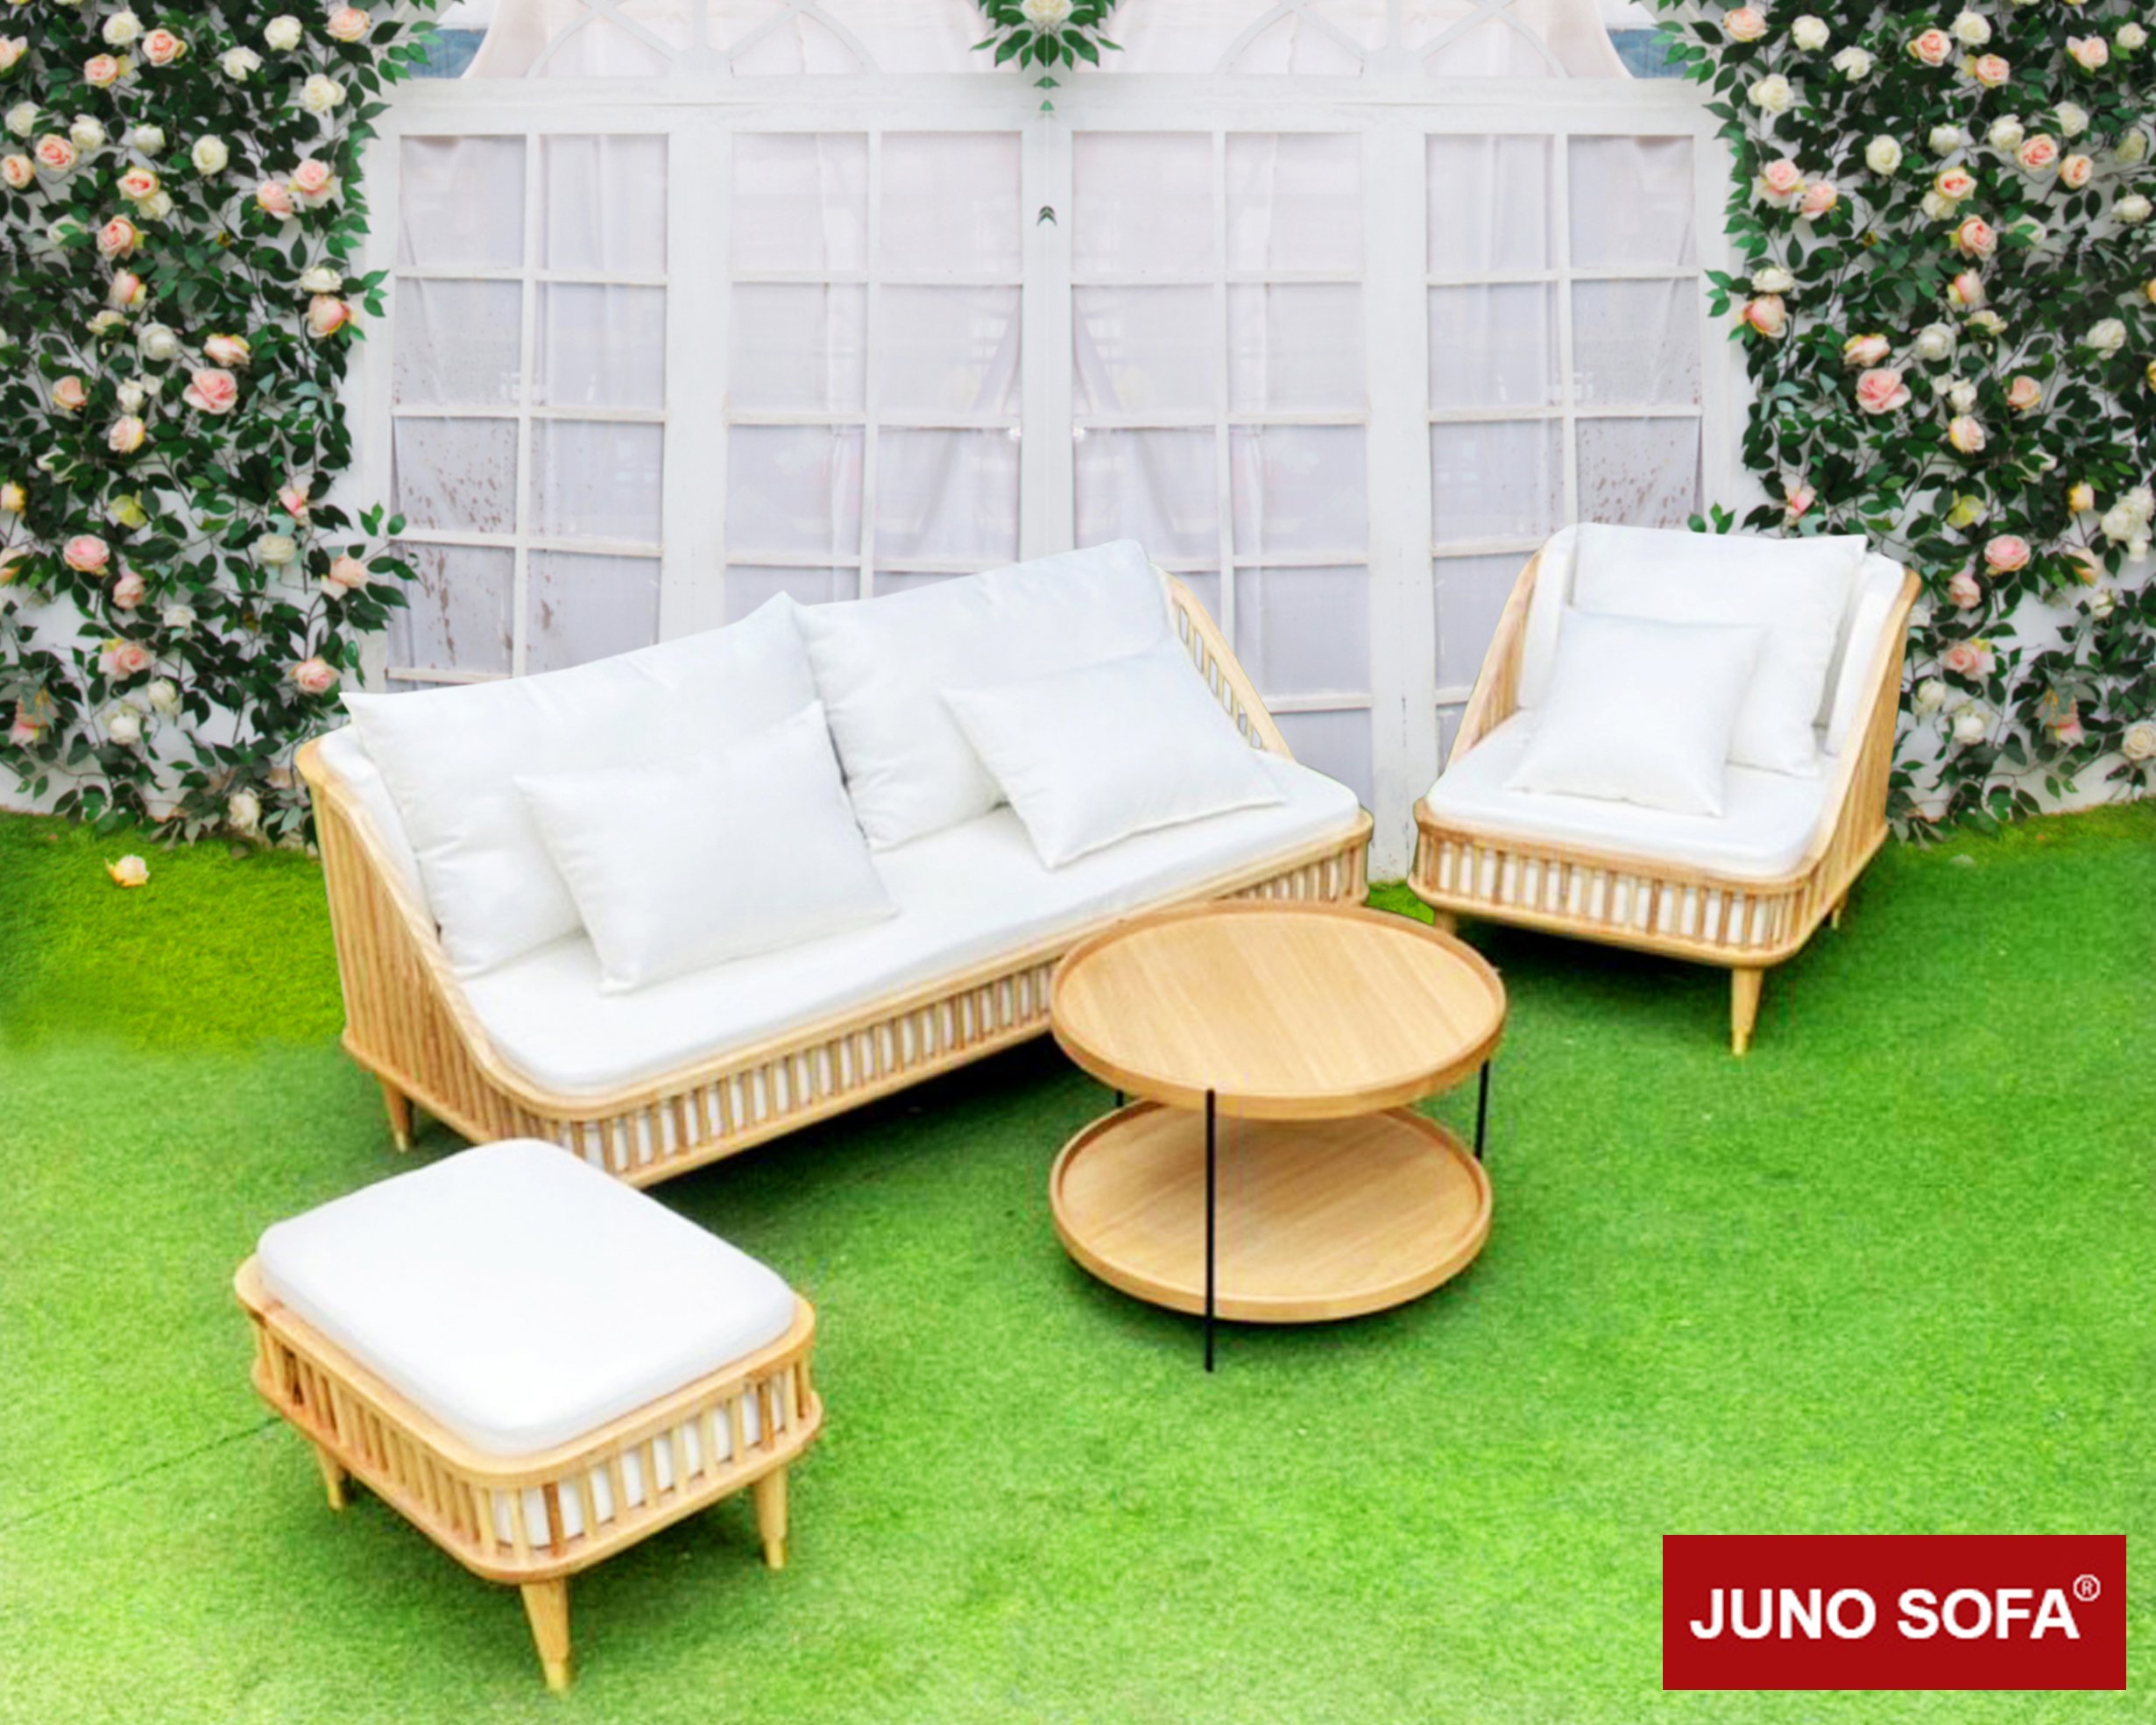 Bộ sofa phong cách Scandinavia, Juno Sofa cao cấp Hồ Chí Minh, Hà Nội